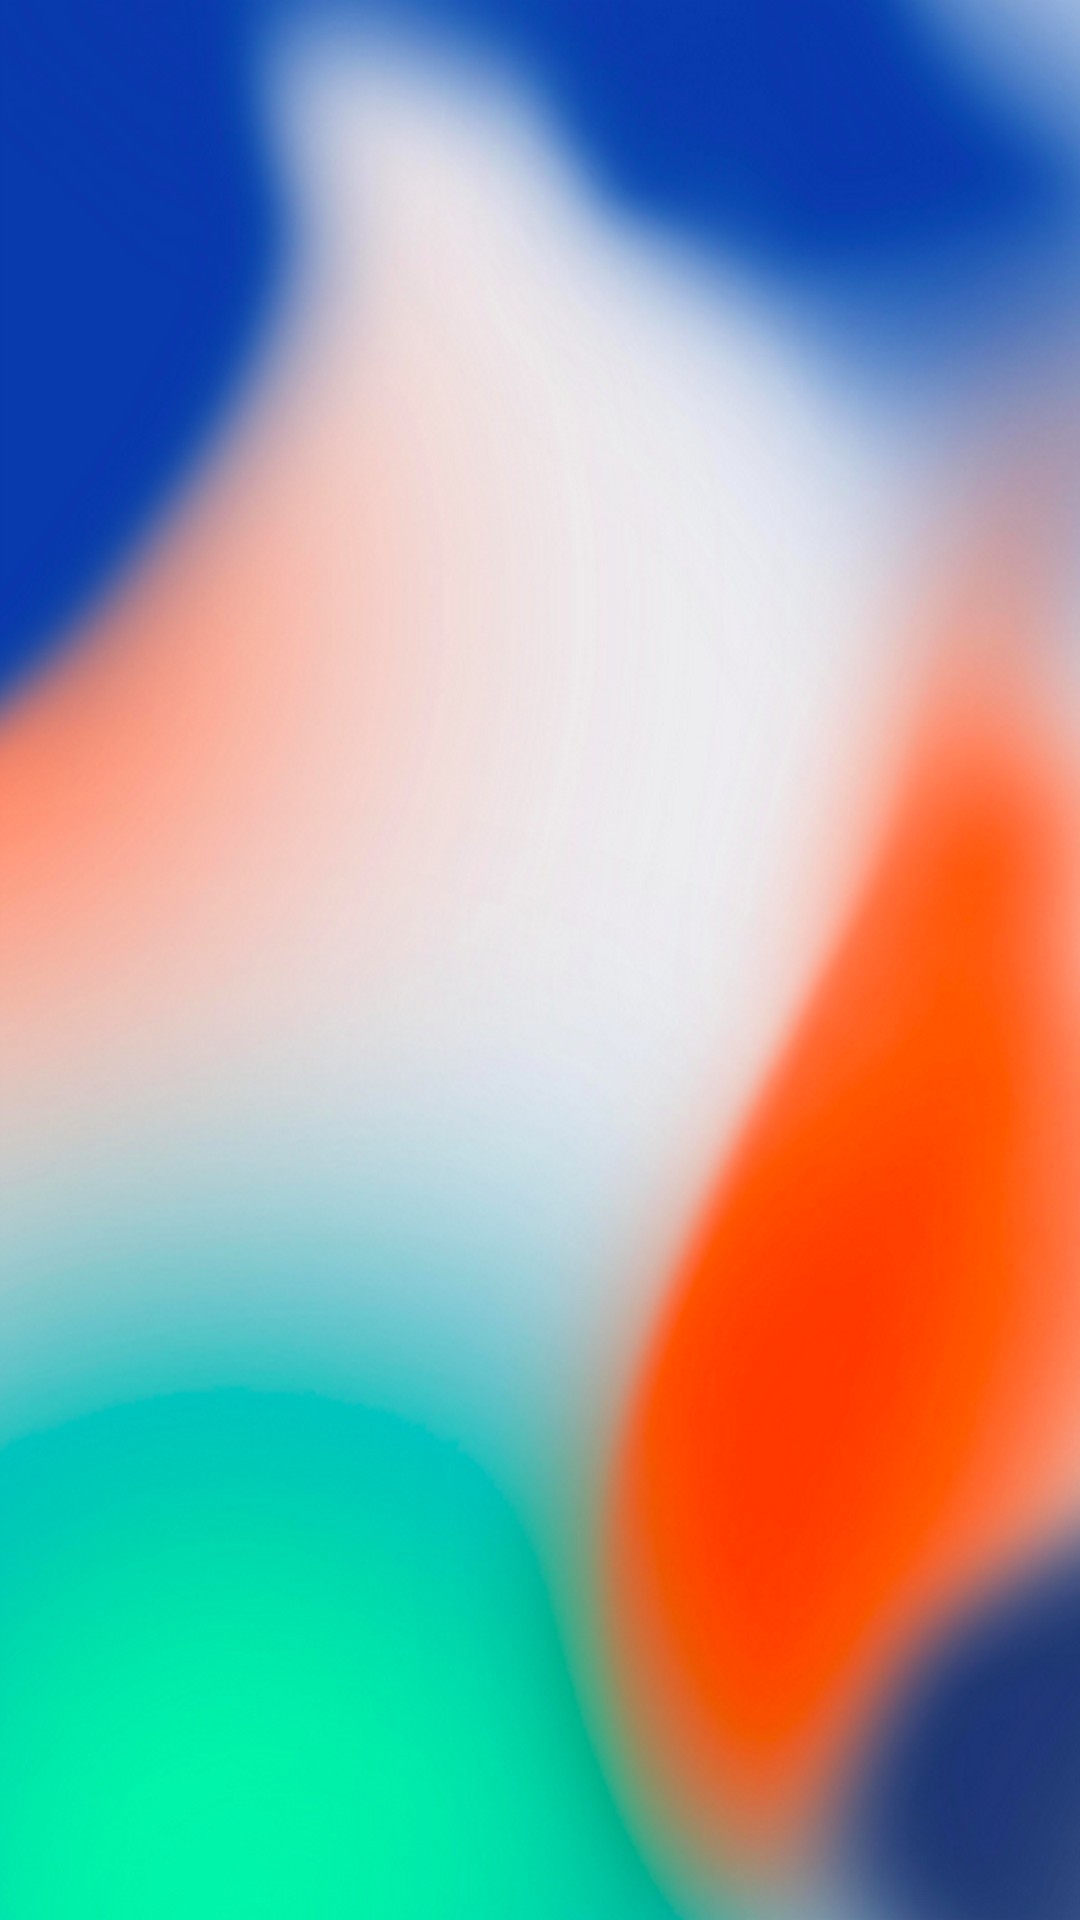 49+] iPhone X Wallpaper HD - WallpaperSafari